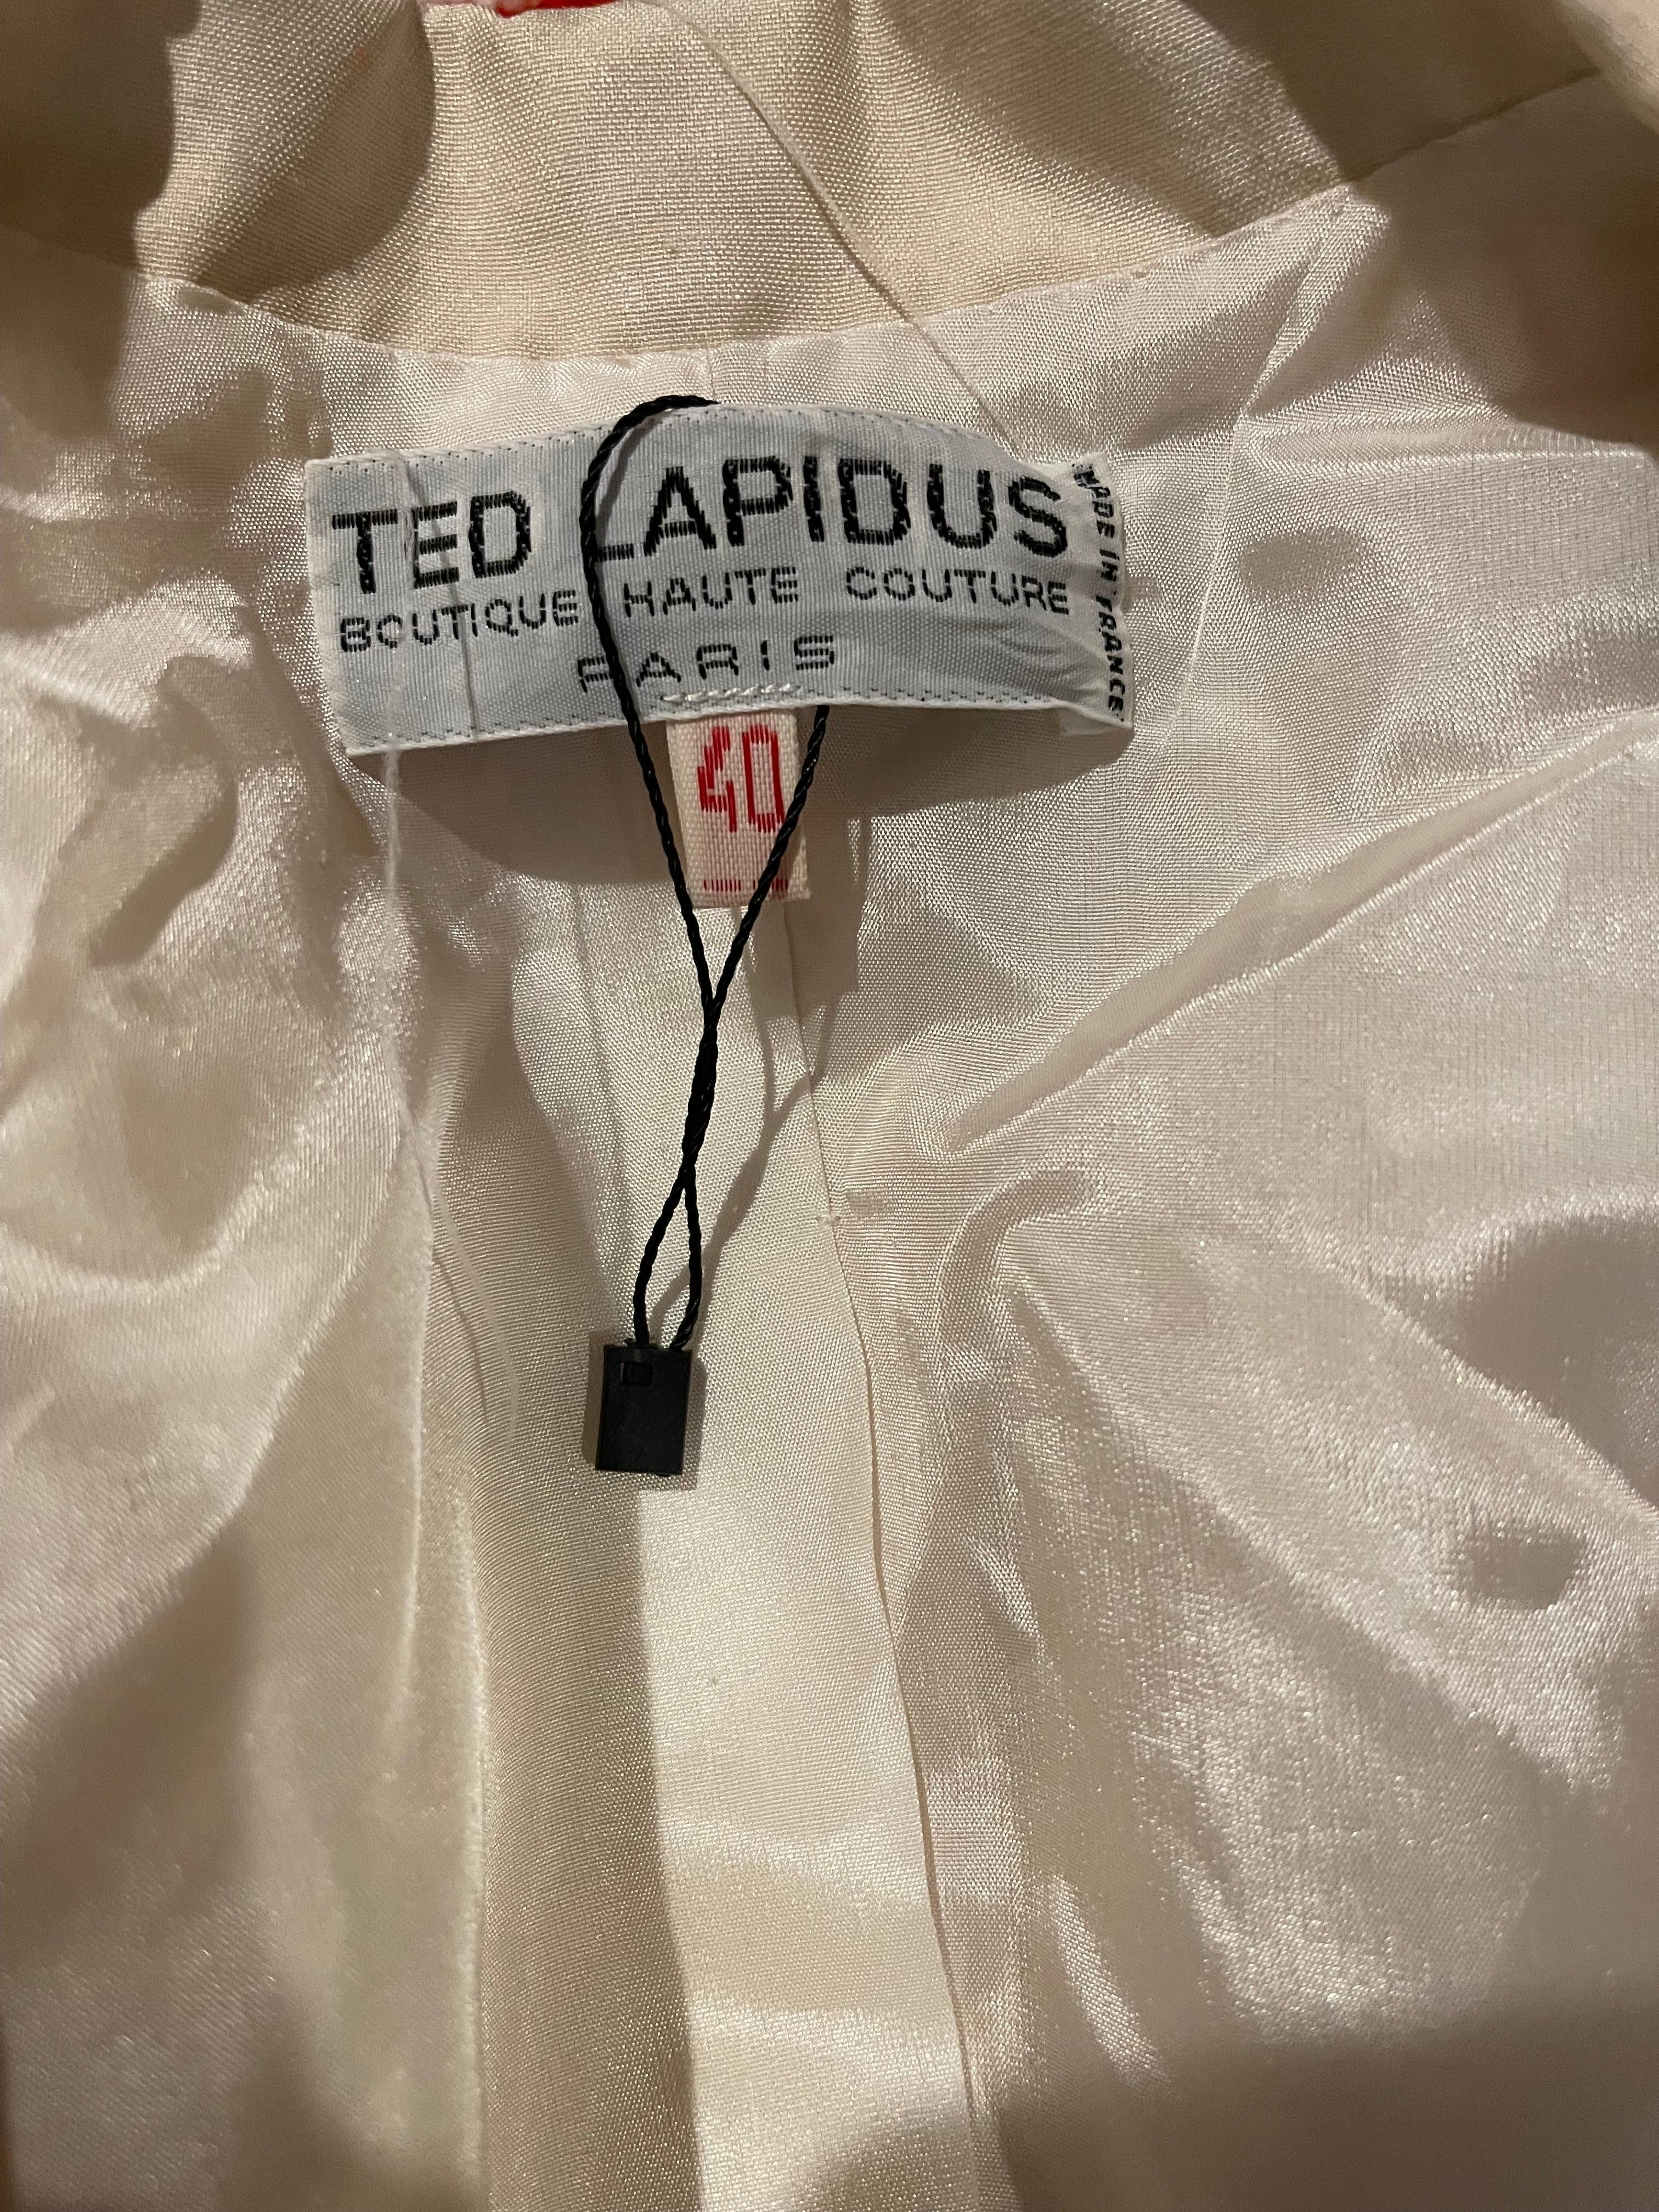 Unglaubliche und seltene späten 70er TED LAPIDUS Haute Couture Elfenbein / off weiß nautischen Seemann Seide Rock Anzug ! Maßgeschneiderter Blazer mit goldgesticktem Anker auf der linken Brusttasche. Revers und Kragen sind an den Rändern mit einer